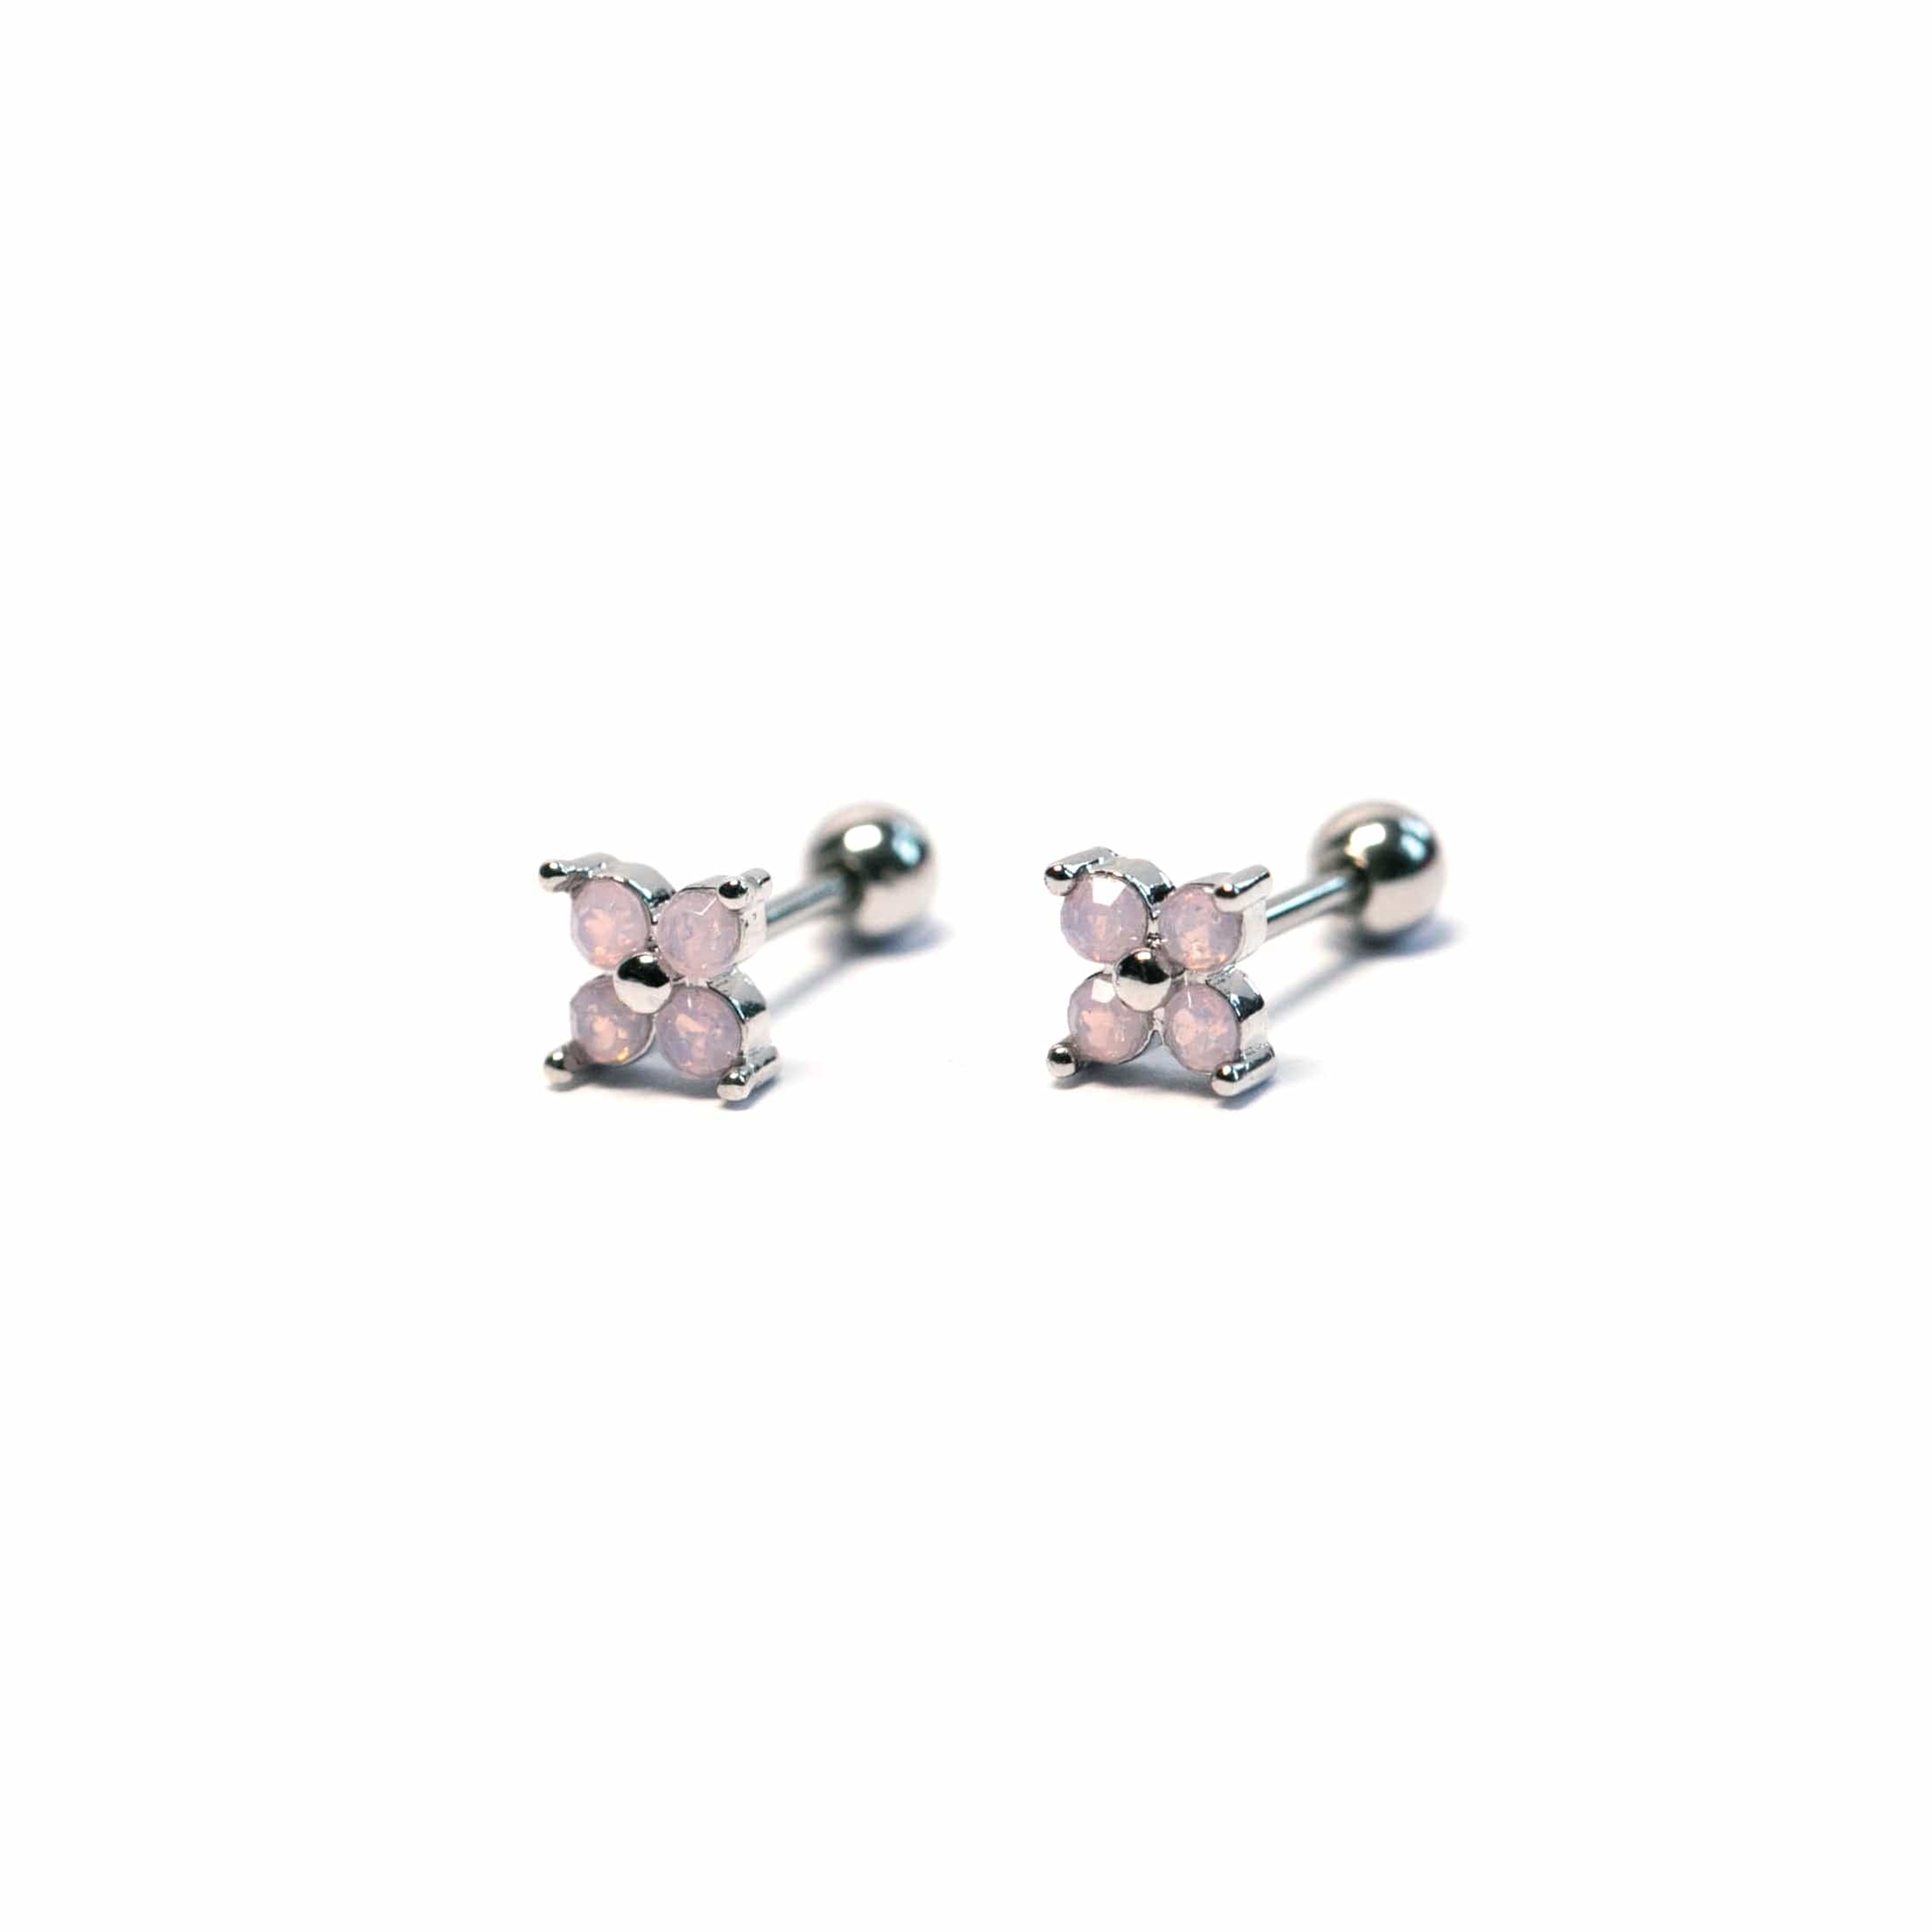 Twilight London Stud Earrings Pink / Silver Dainty Clover Earrings